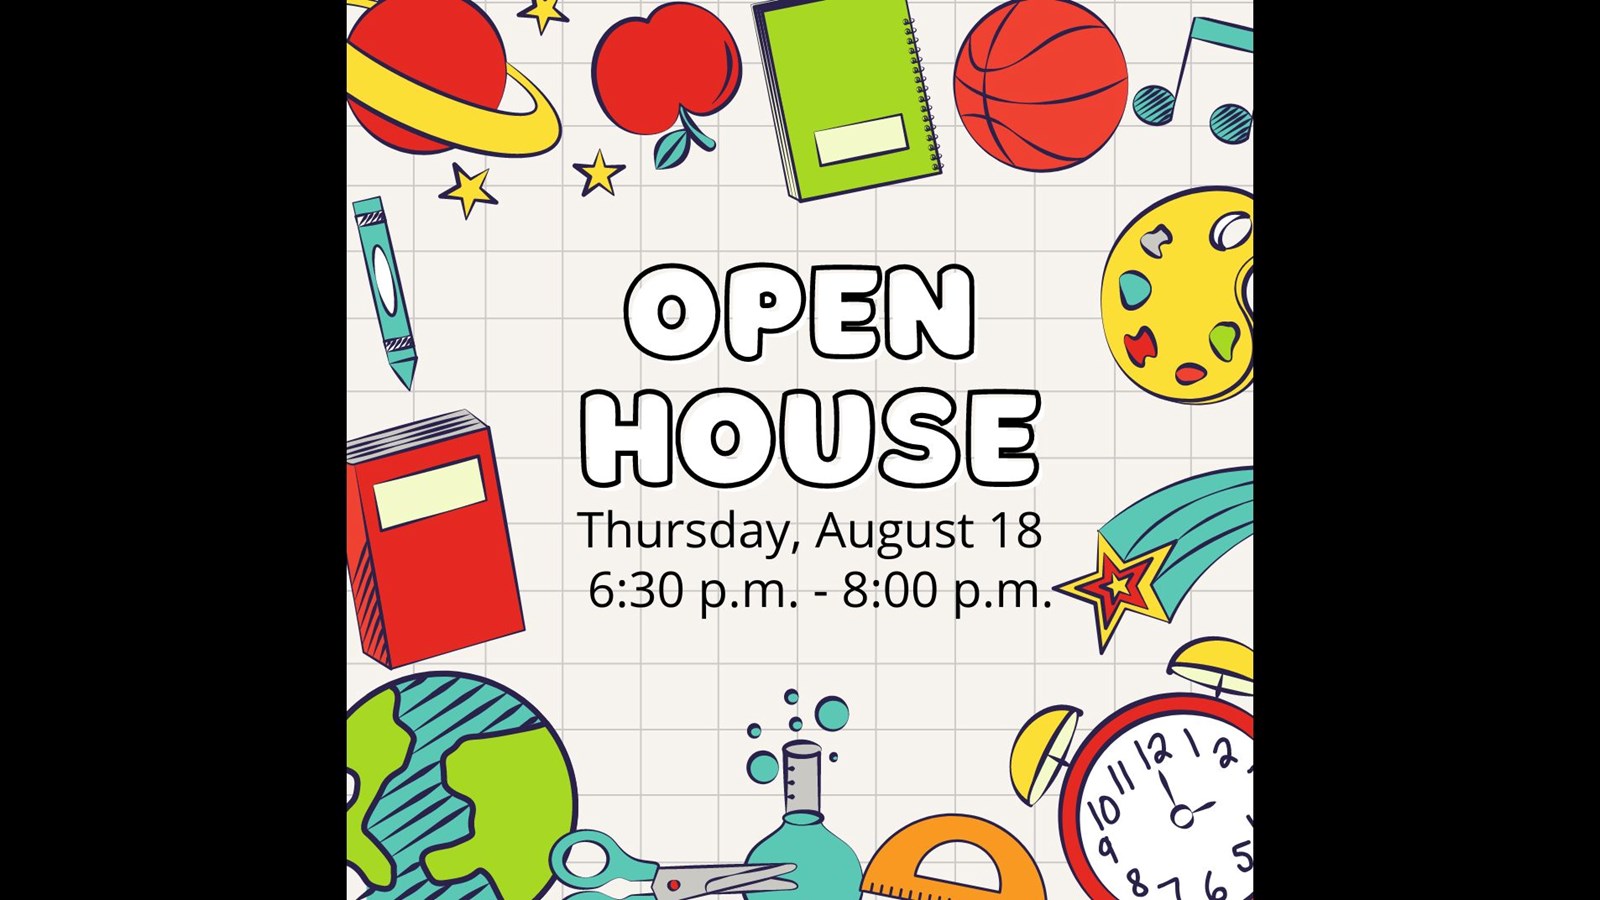 Open House Thursday, 8/18, 6:30 - 8:00